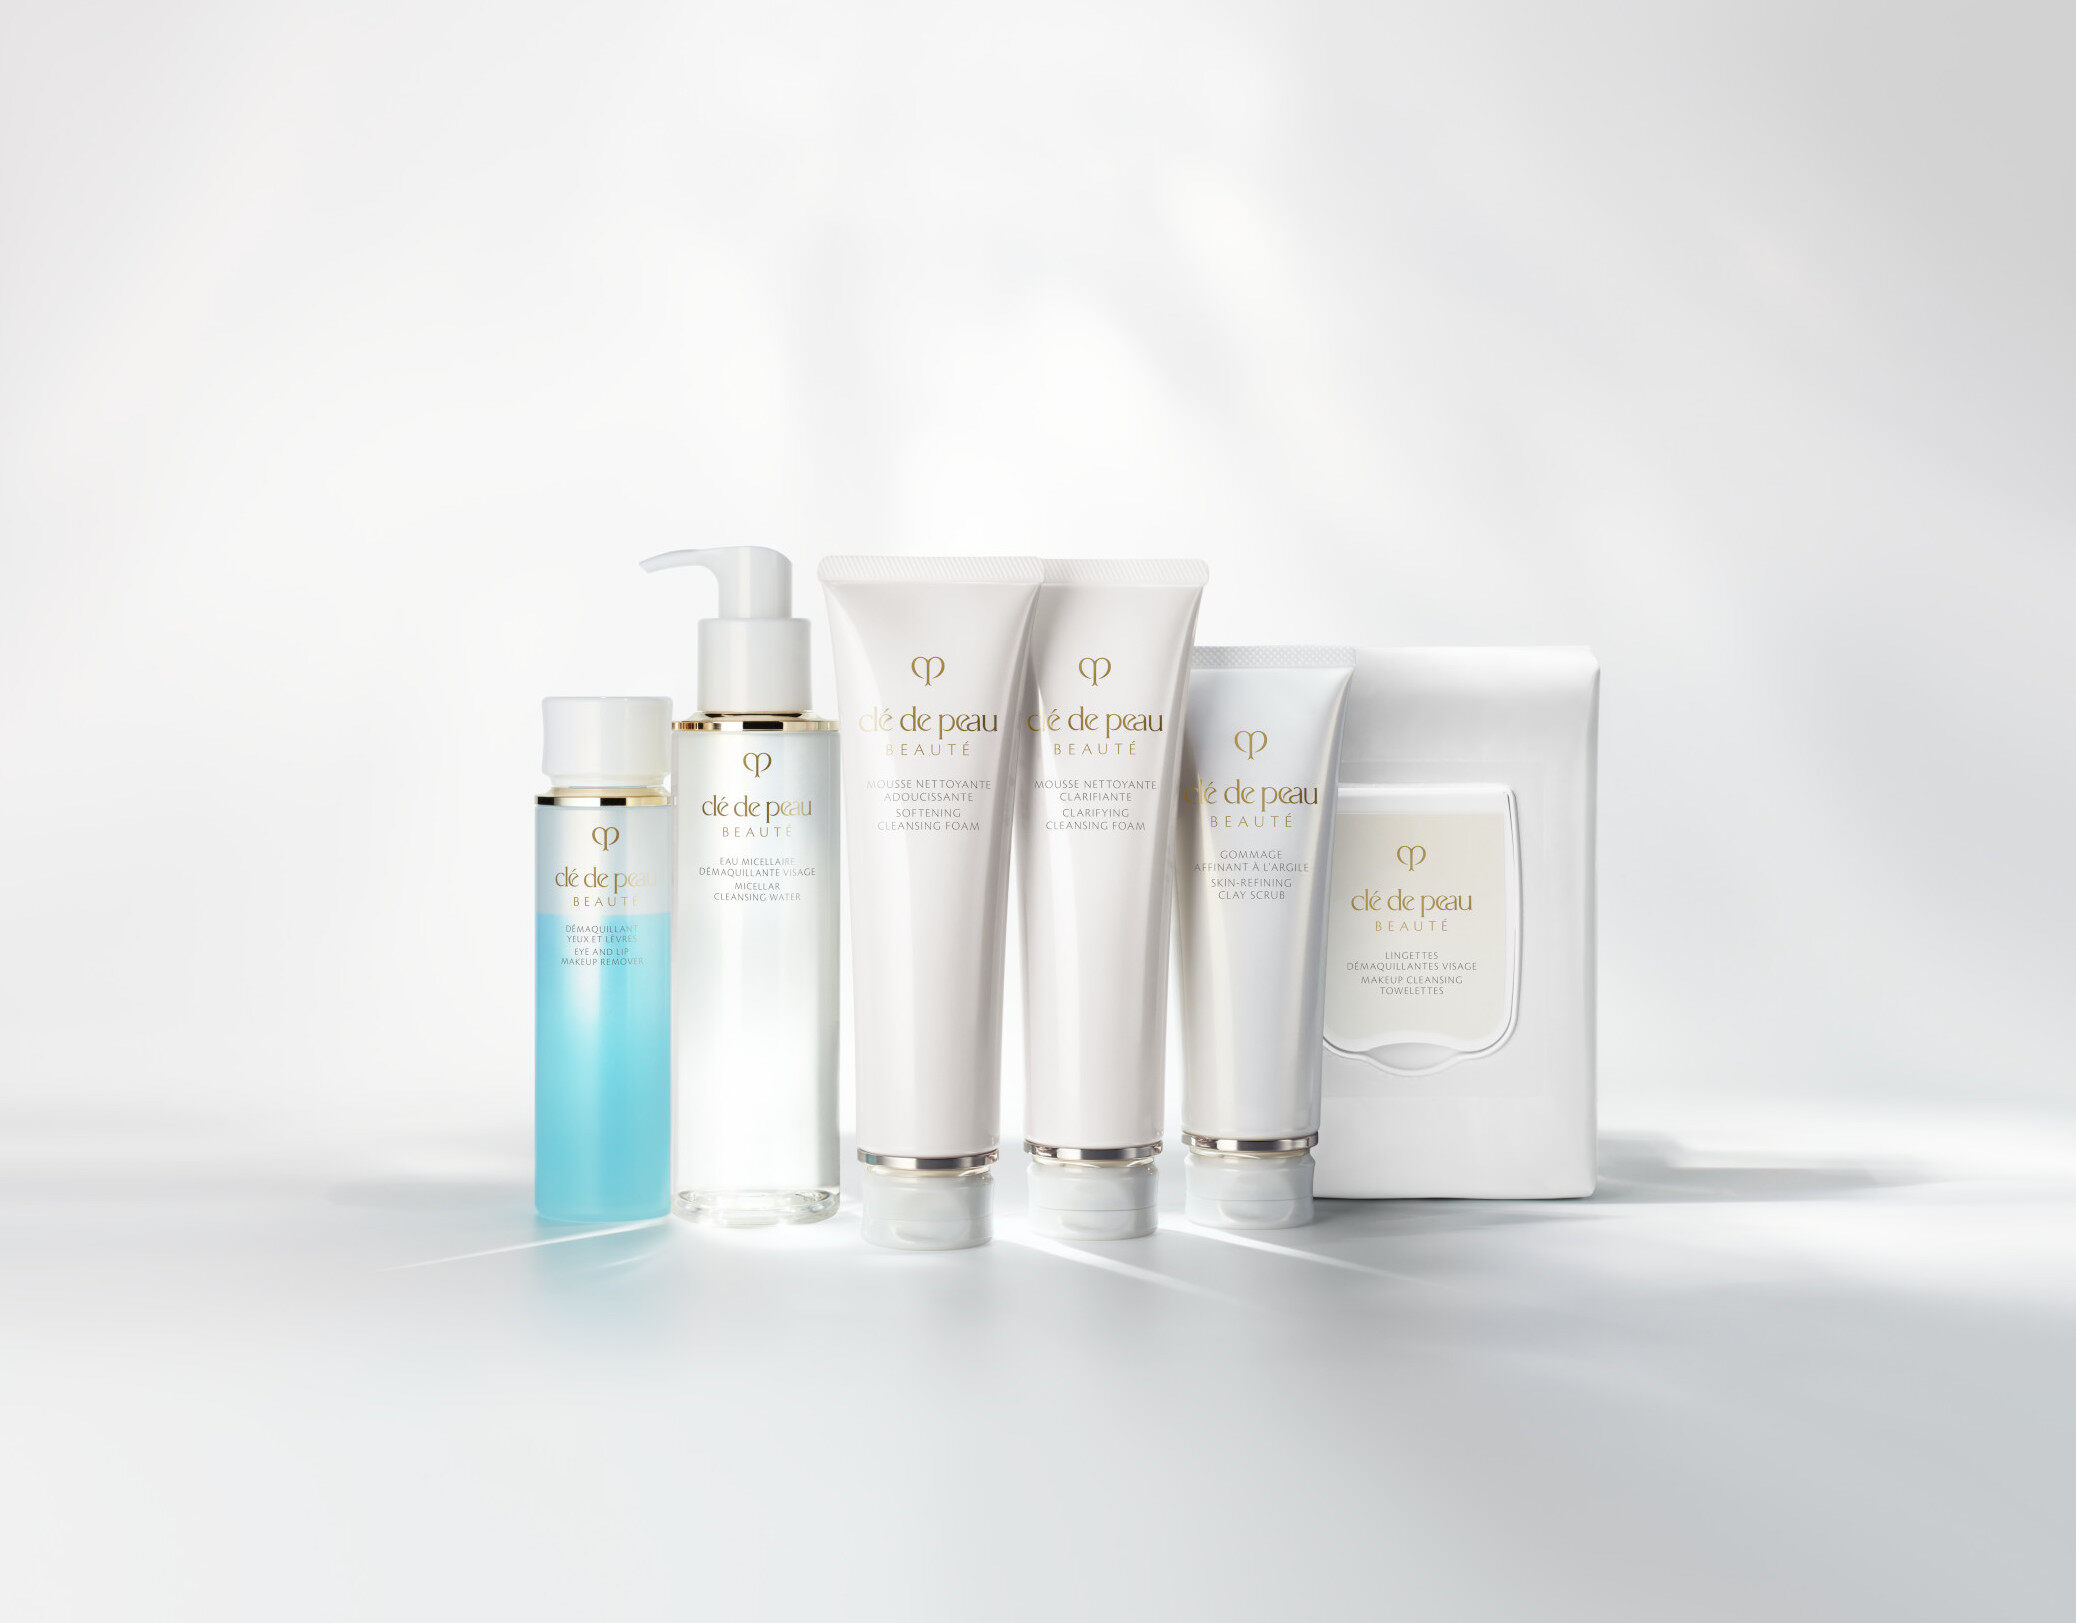 全新鉑鑽潔膚系列共有6件潔膚產品，包括鉑鑽柔膚潔面泡沫、鉑鑽淨膚